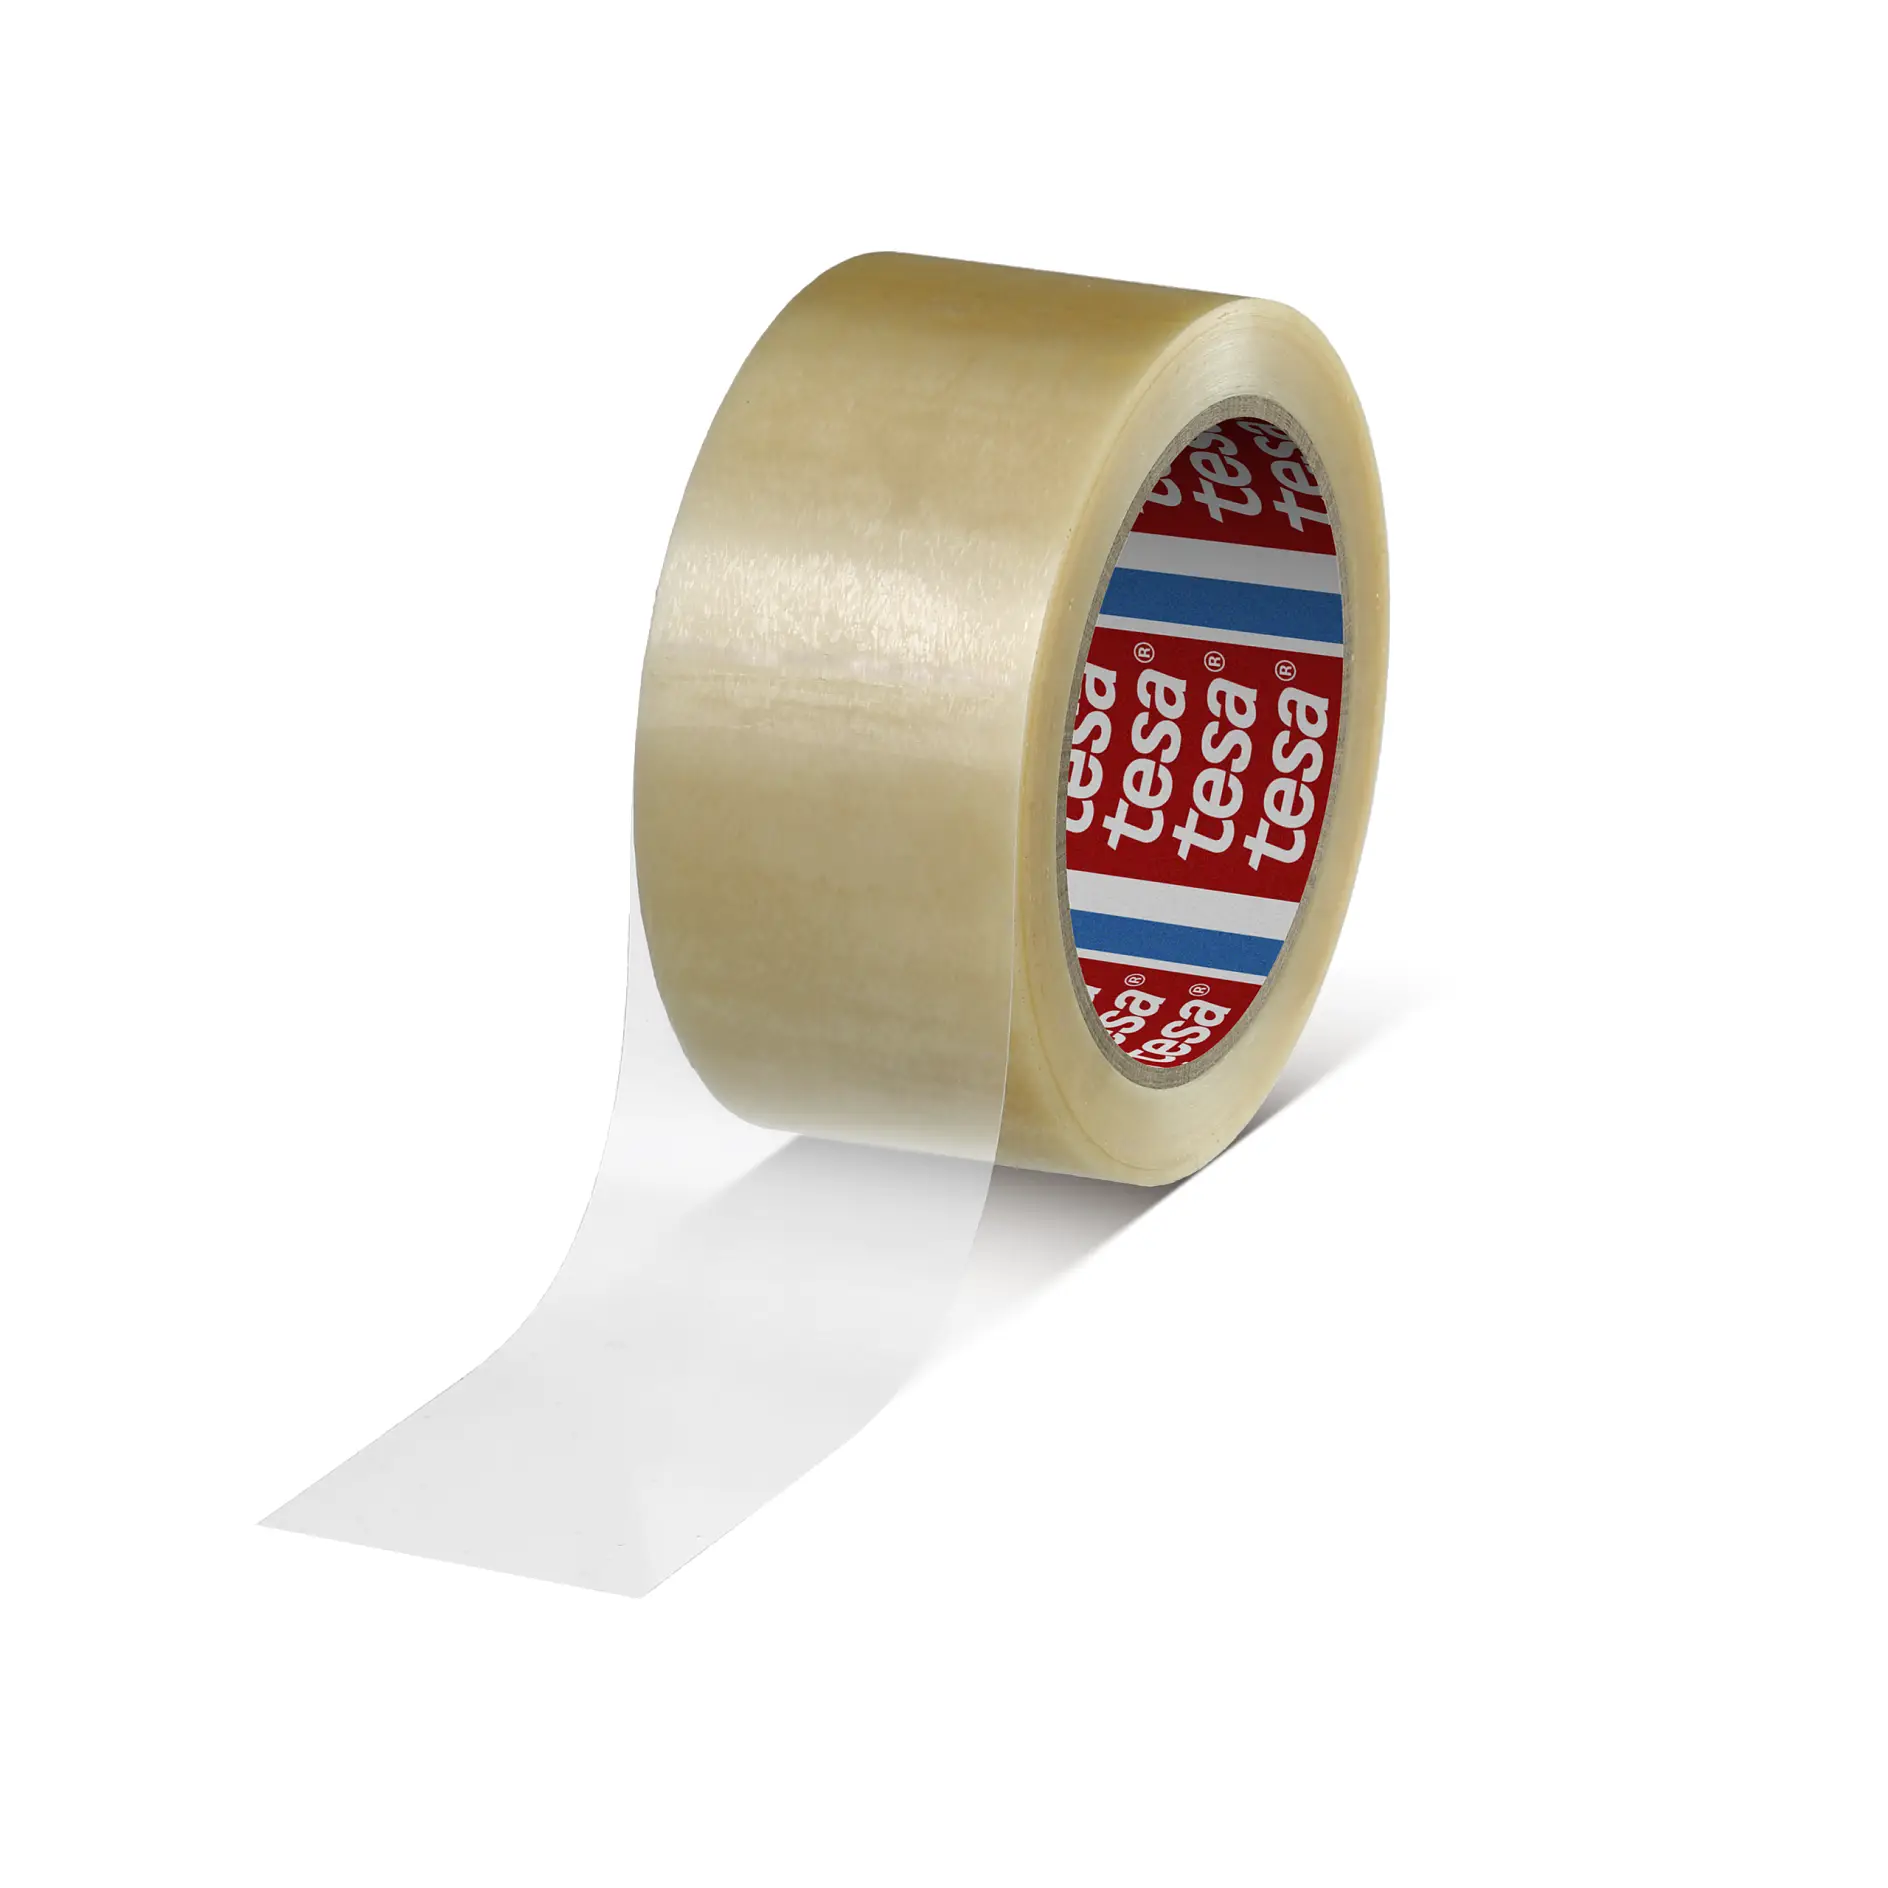 tesa-4263-pv7-general-carton-sealing-tape-transparent-042630015407-pr